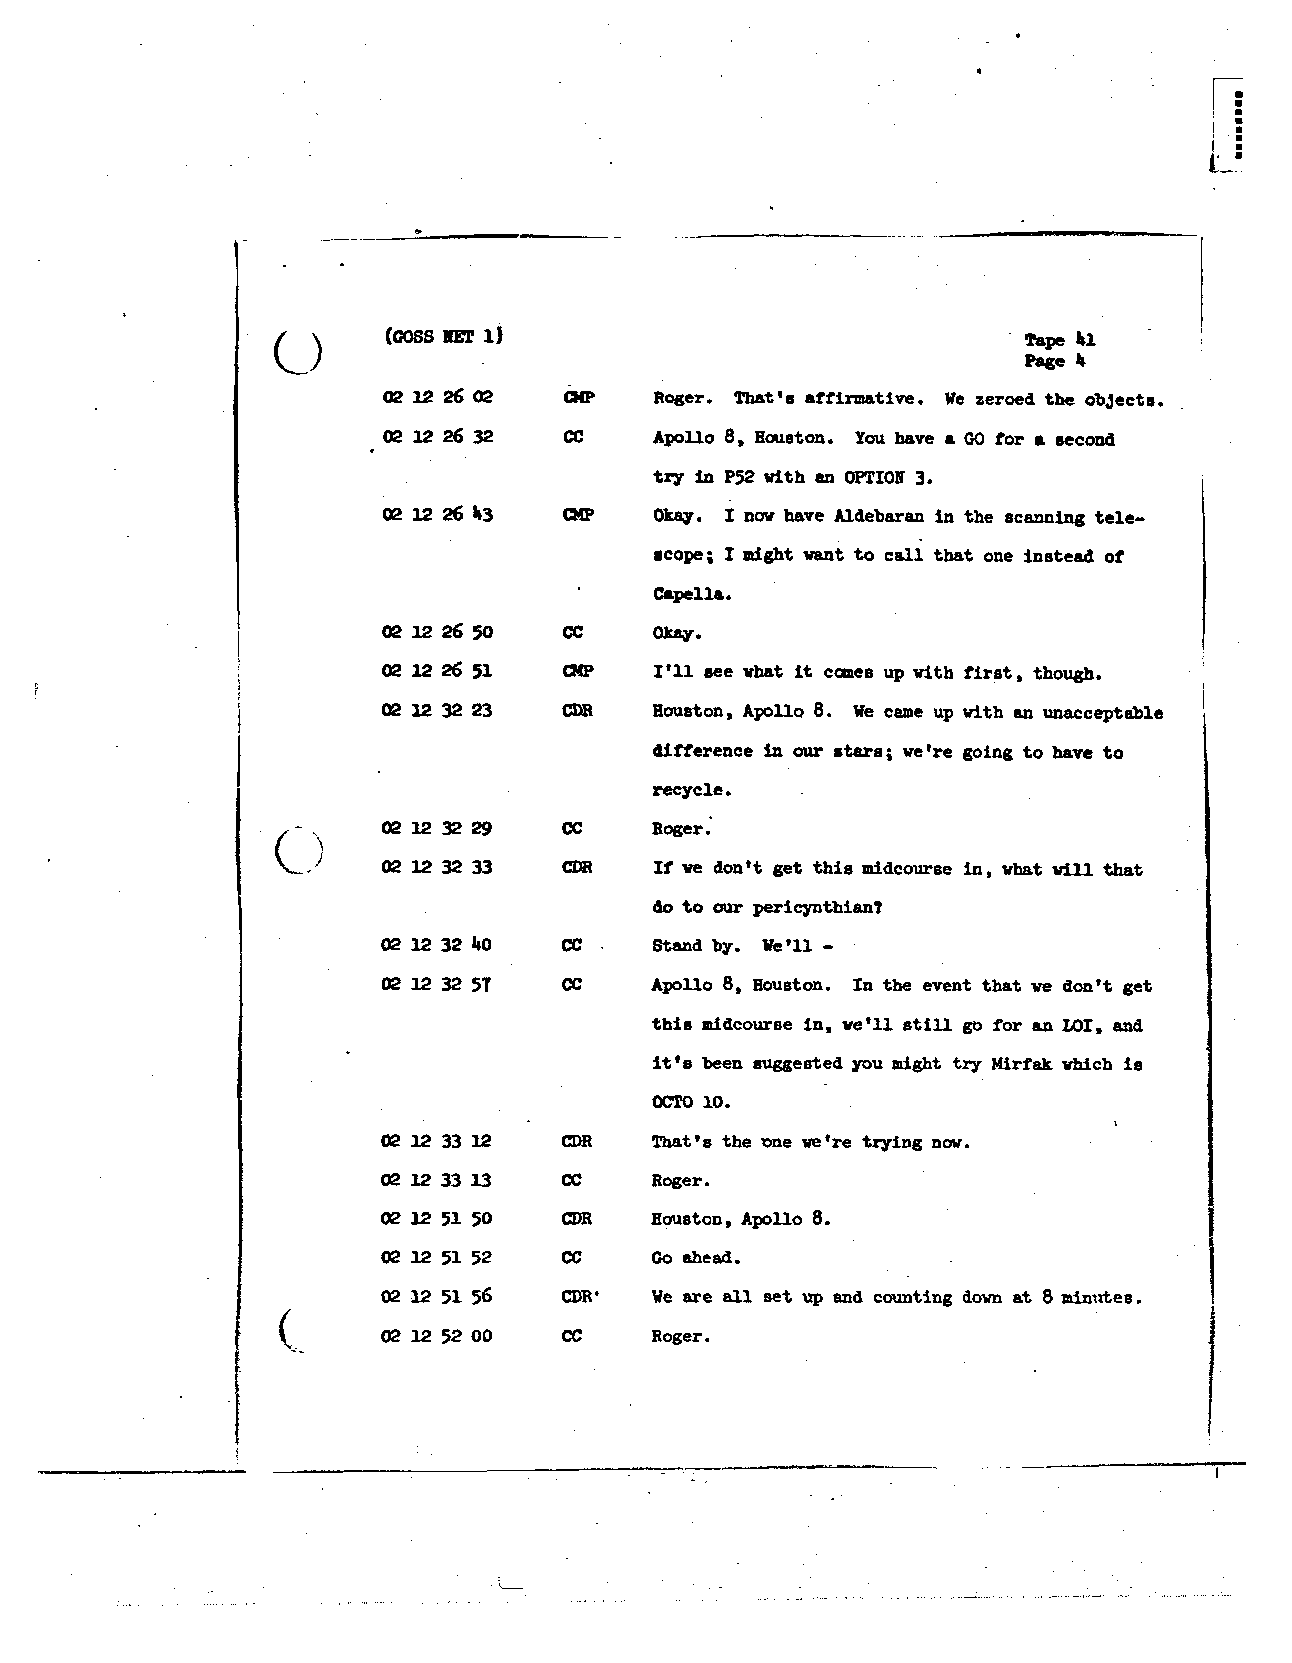 Page 315 of Apollo 8’s original transcript